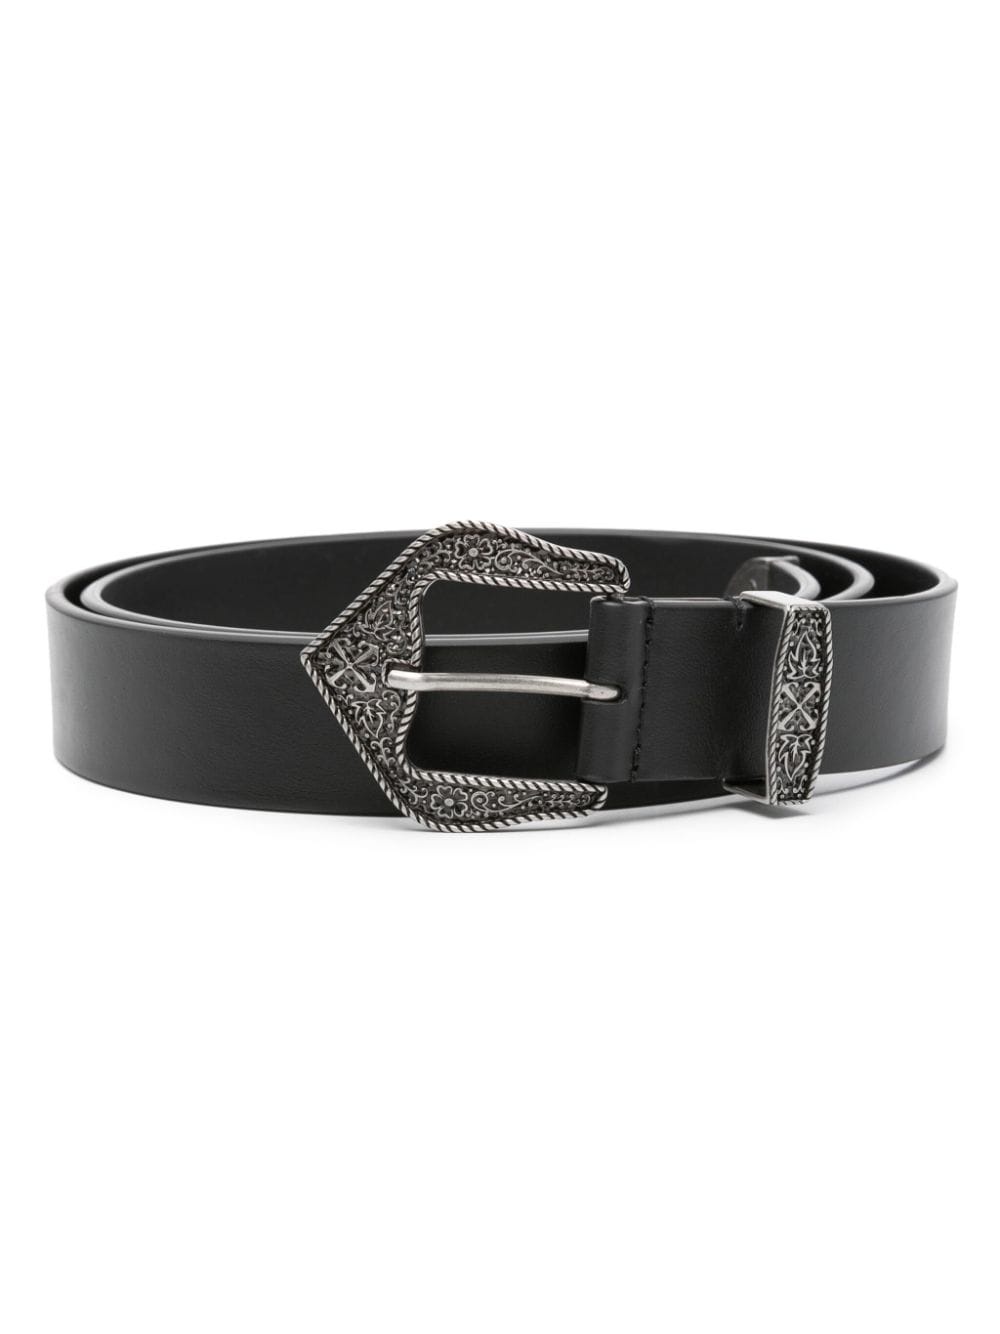 Arrows-motif leather belt - 1